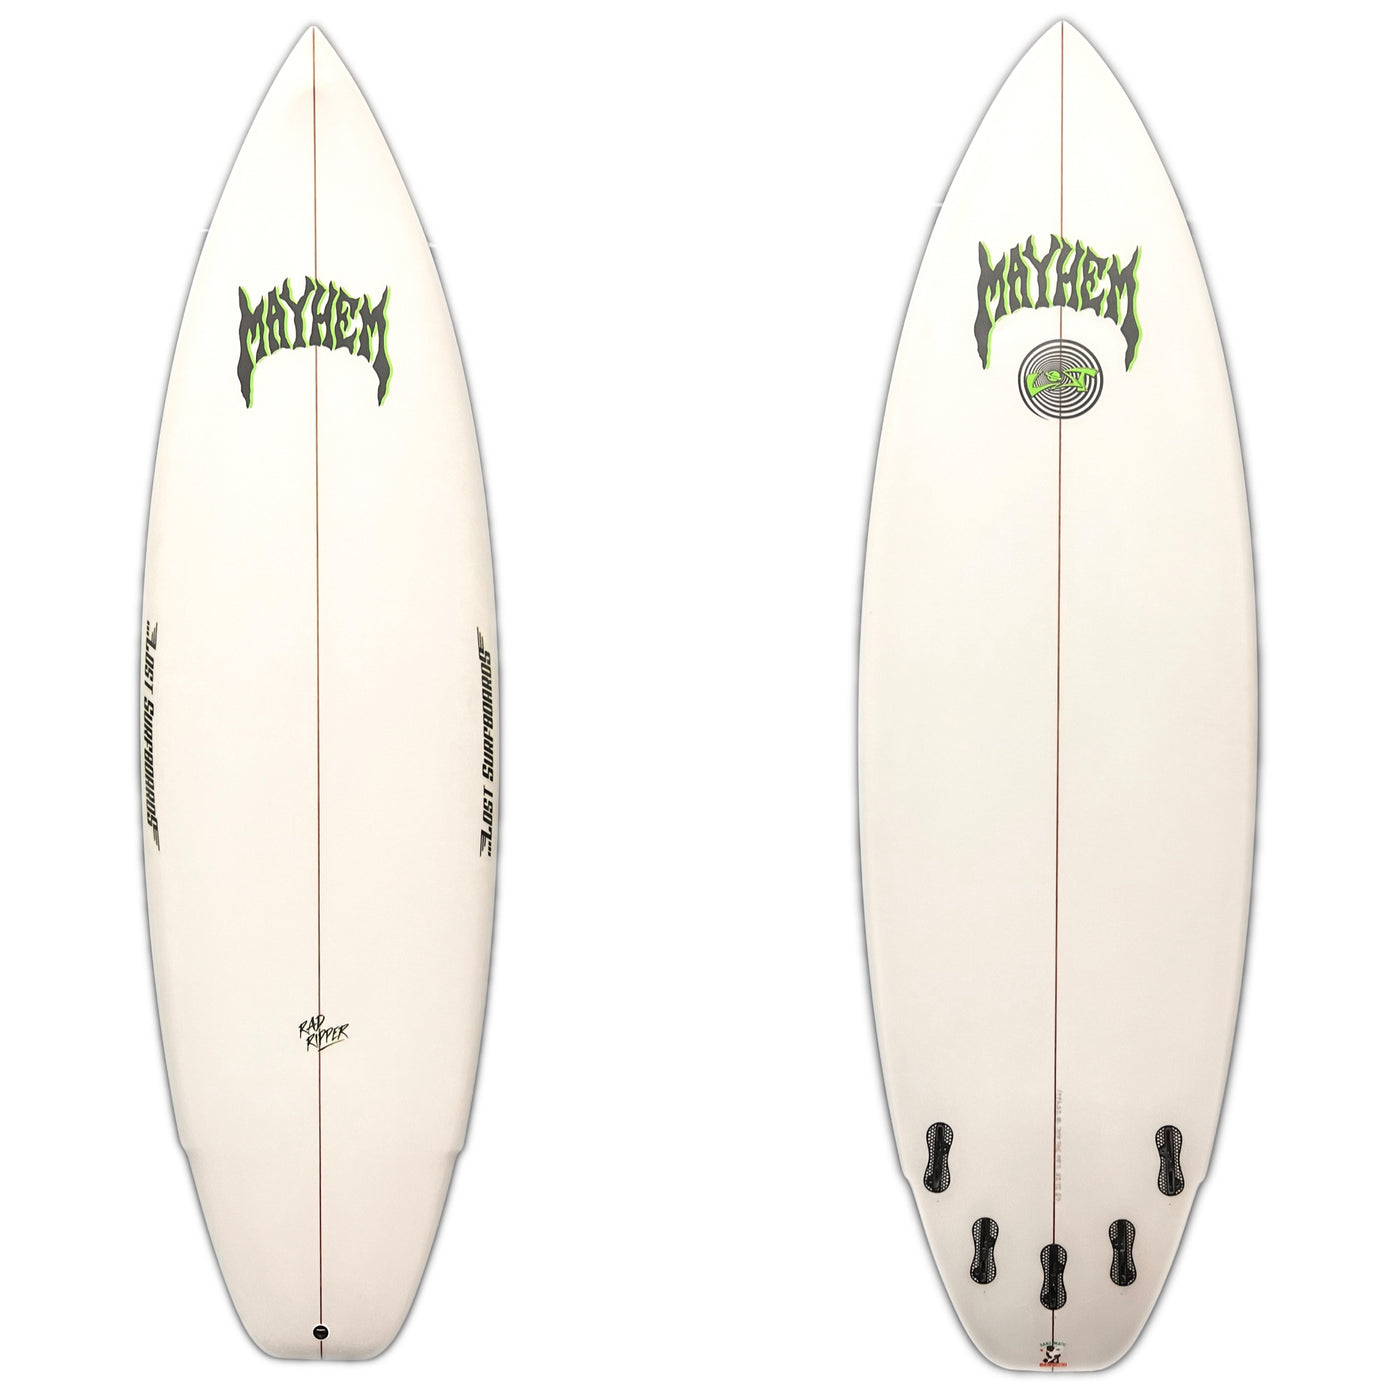 Lost Rad Ripper 6'3" Surfboard FCS II